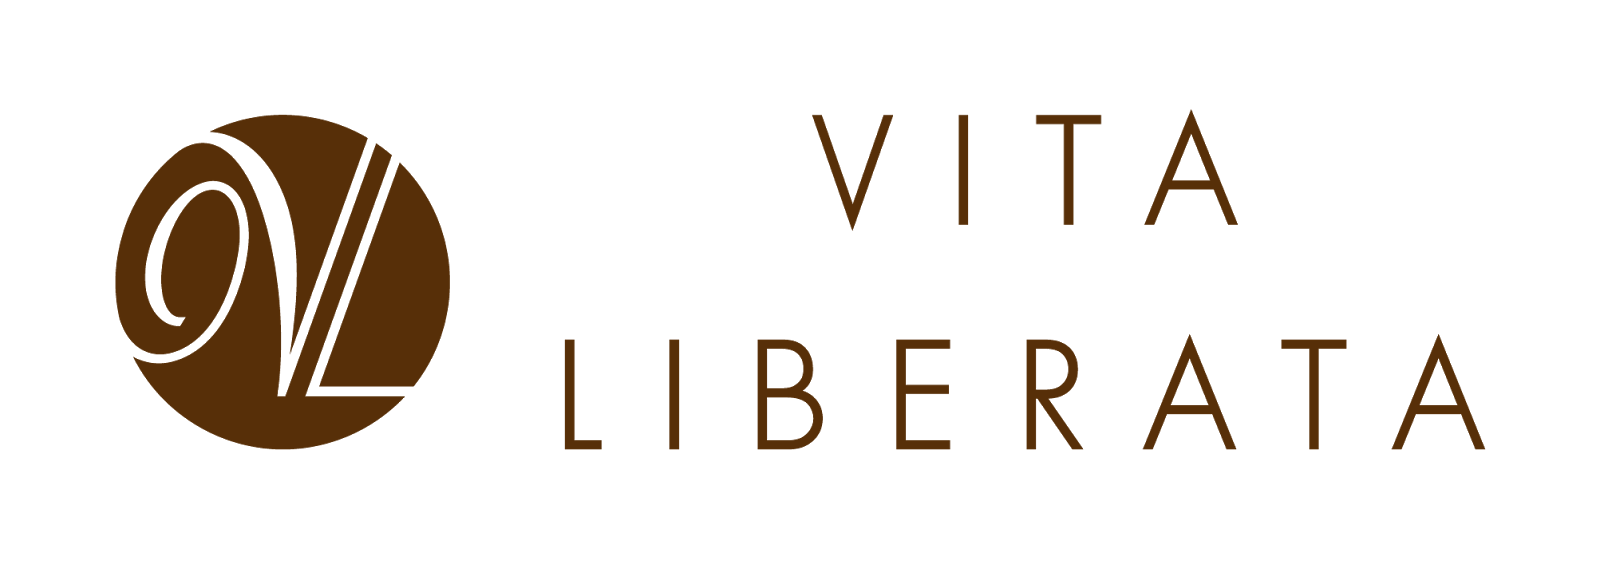 вита-либерата.png